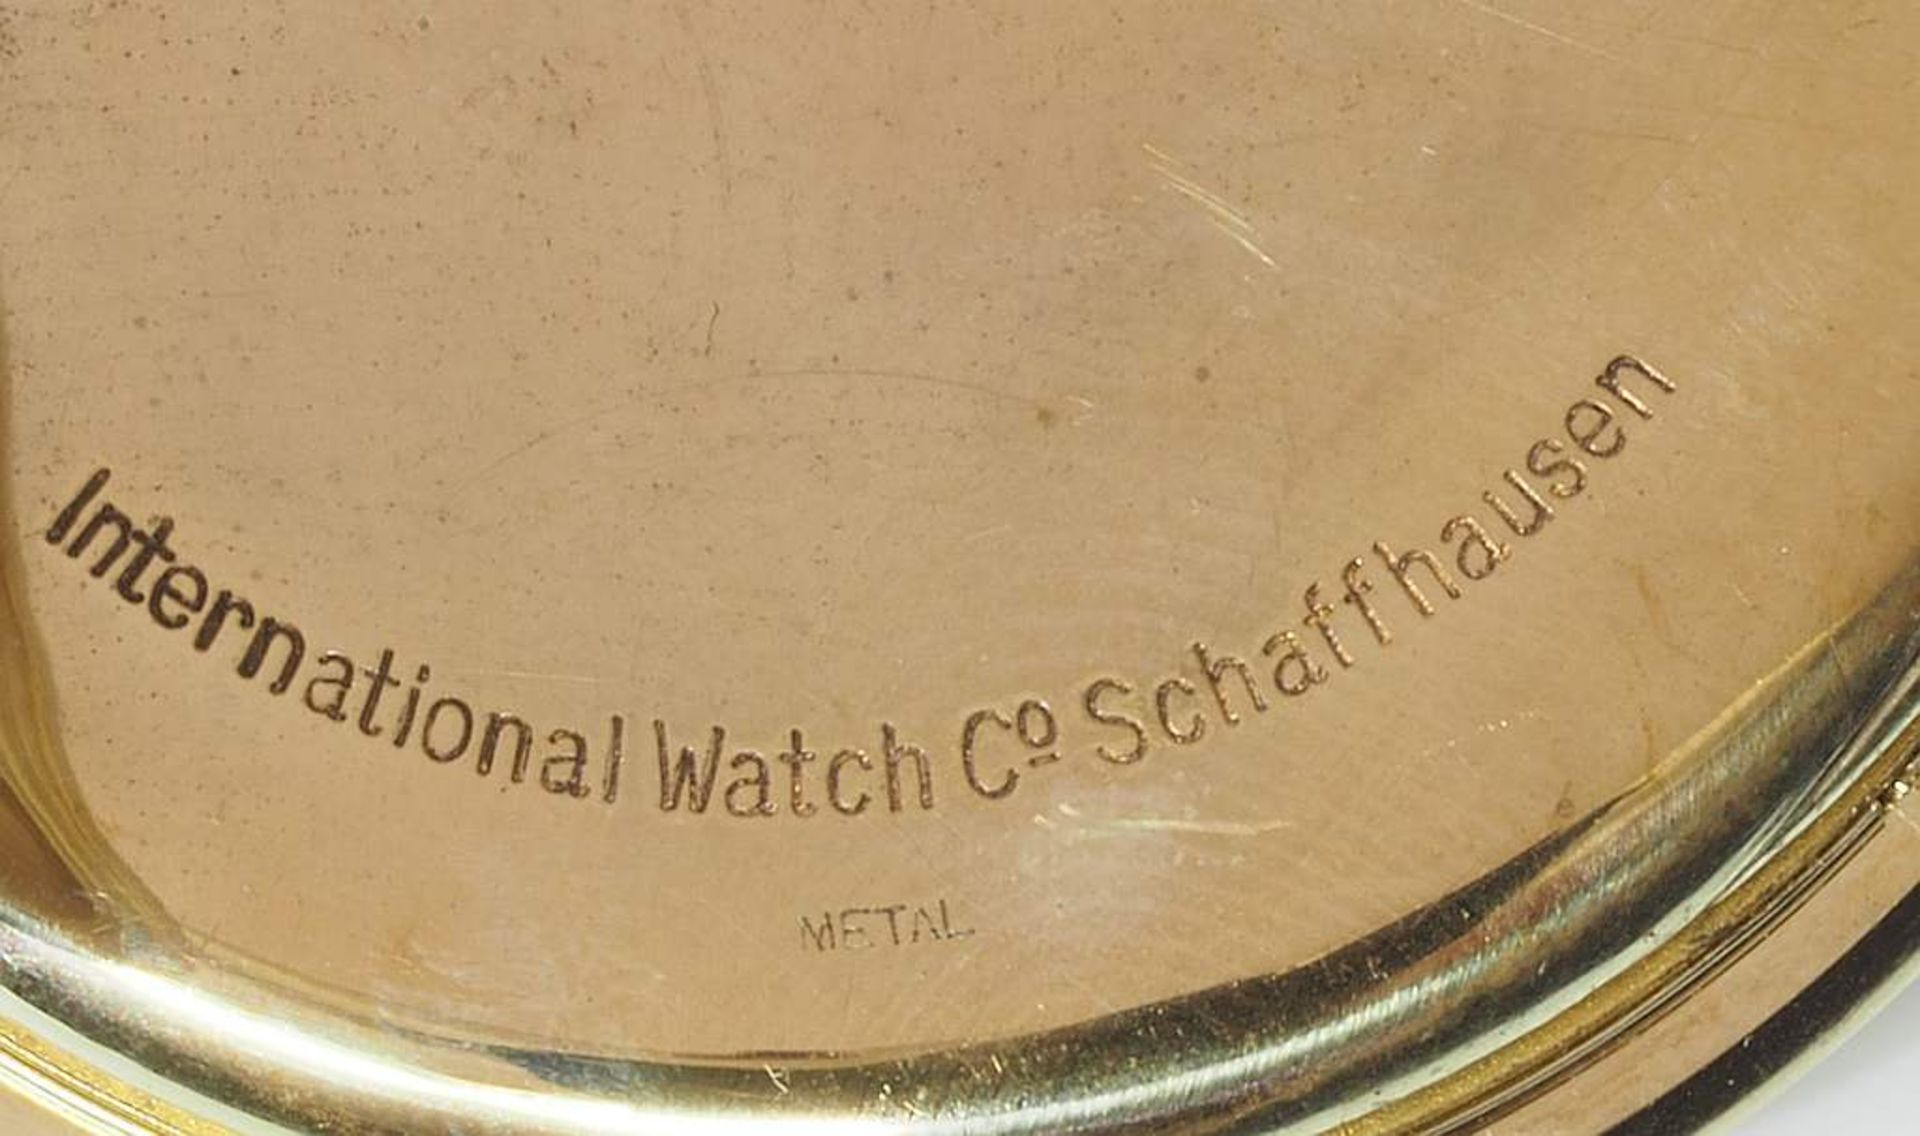 Offene Taschenuhr "IWC" International Watch Schaffhausen, 585er Gelbgold. Staubdeckel unedel. Goldf - Bild 6 aus 9